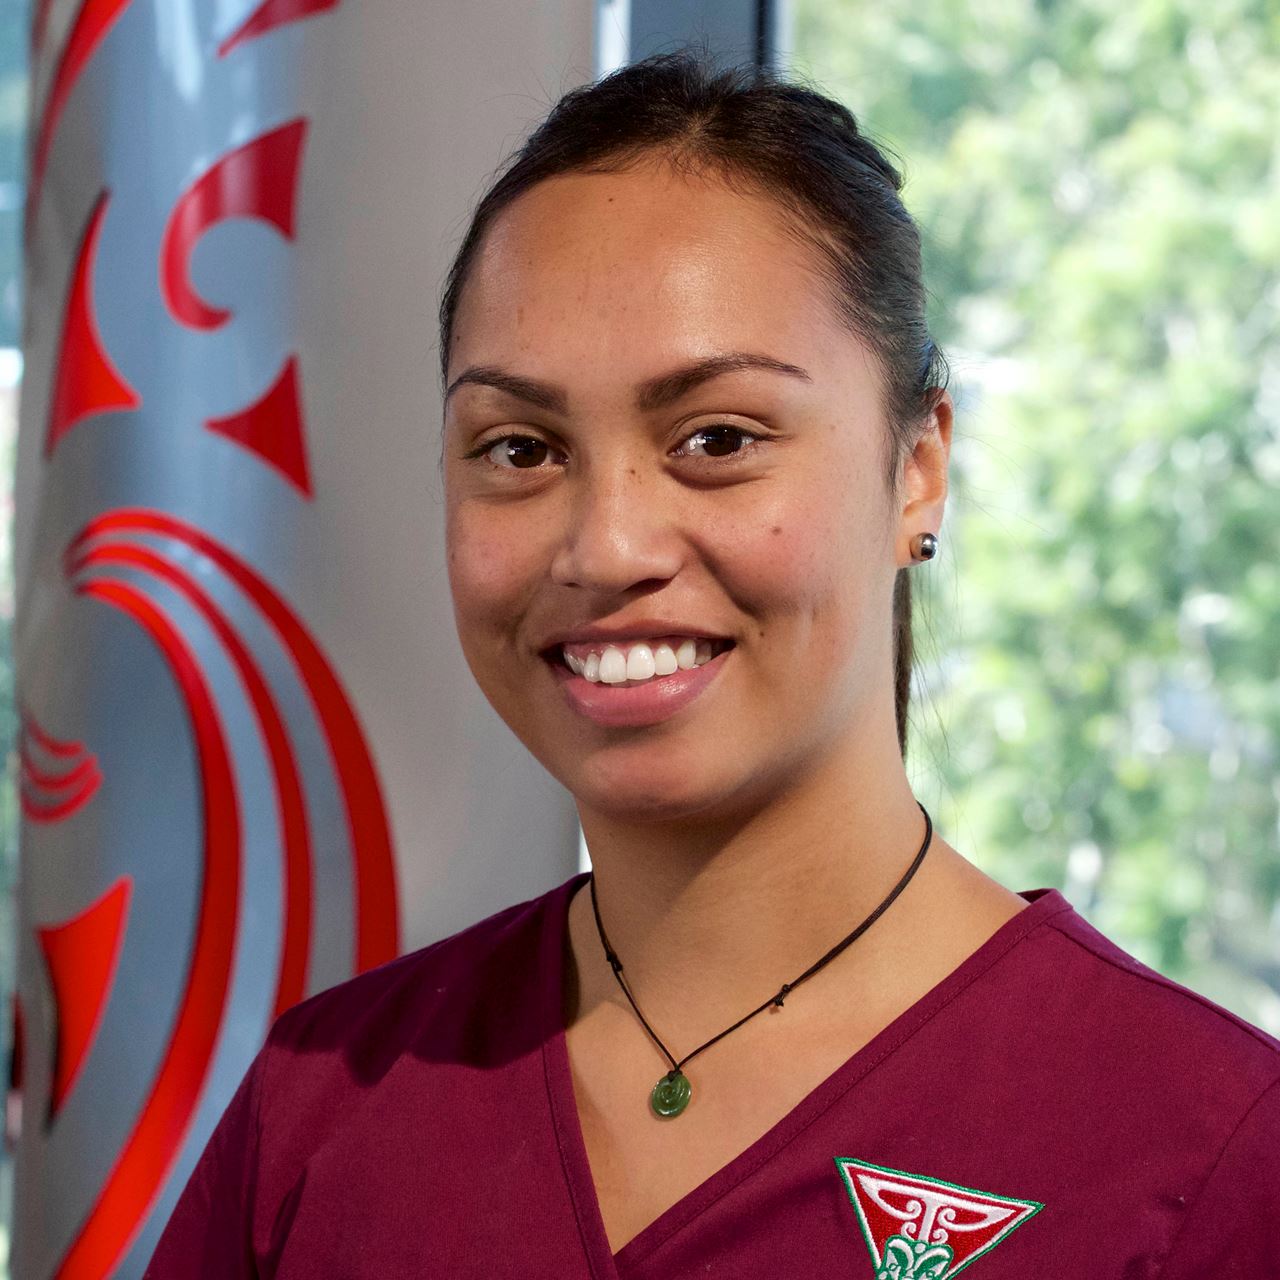 Te Whare Wānanga o Awanuiārangi graduate Aroha Ruha-Hiraka has been named this year's joint winner of the national Young Nurse of the Year Award.